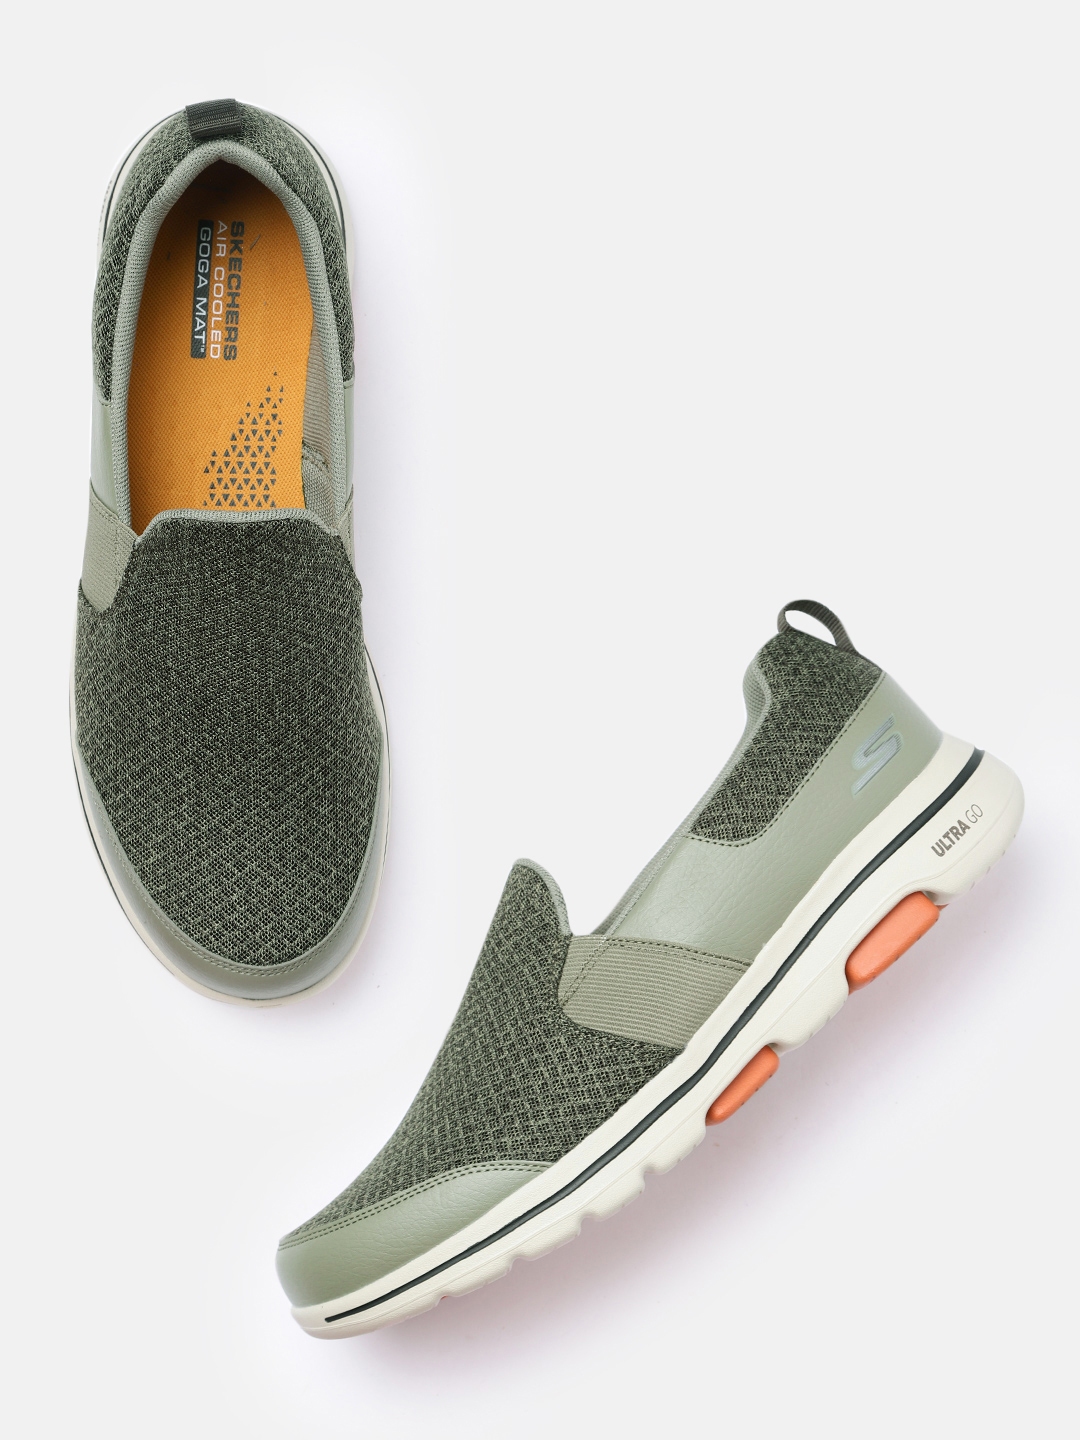 Buy Skechers Men Olive Green Go Walk 5 Rango Walking Shoes - Sports ...